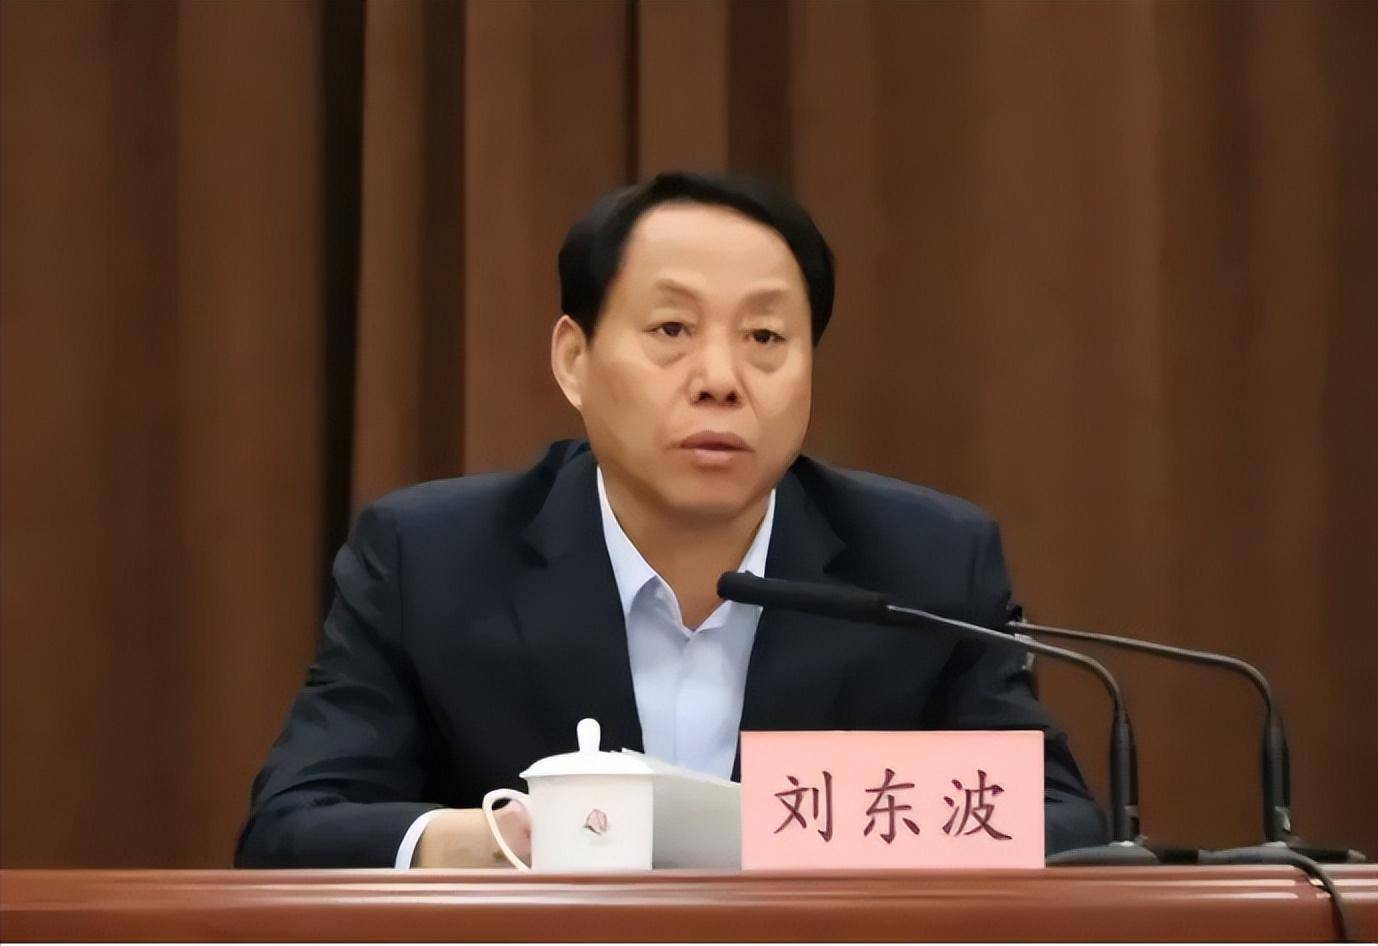 2014年,刘东波调任曲阜市,先后出任曲阜市委副书记,副市长,代理市长